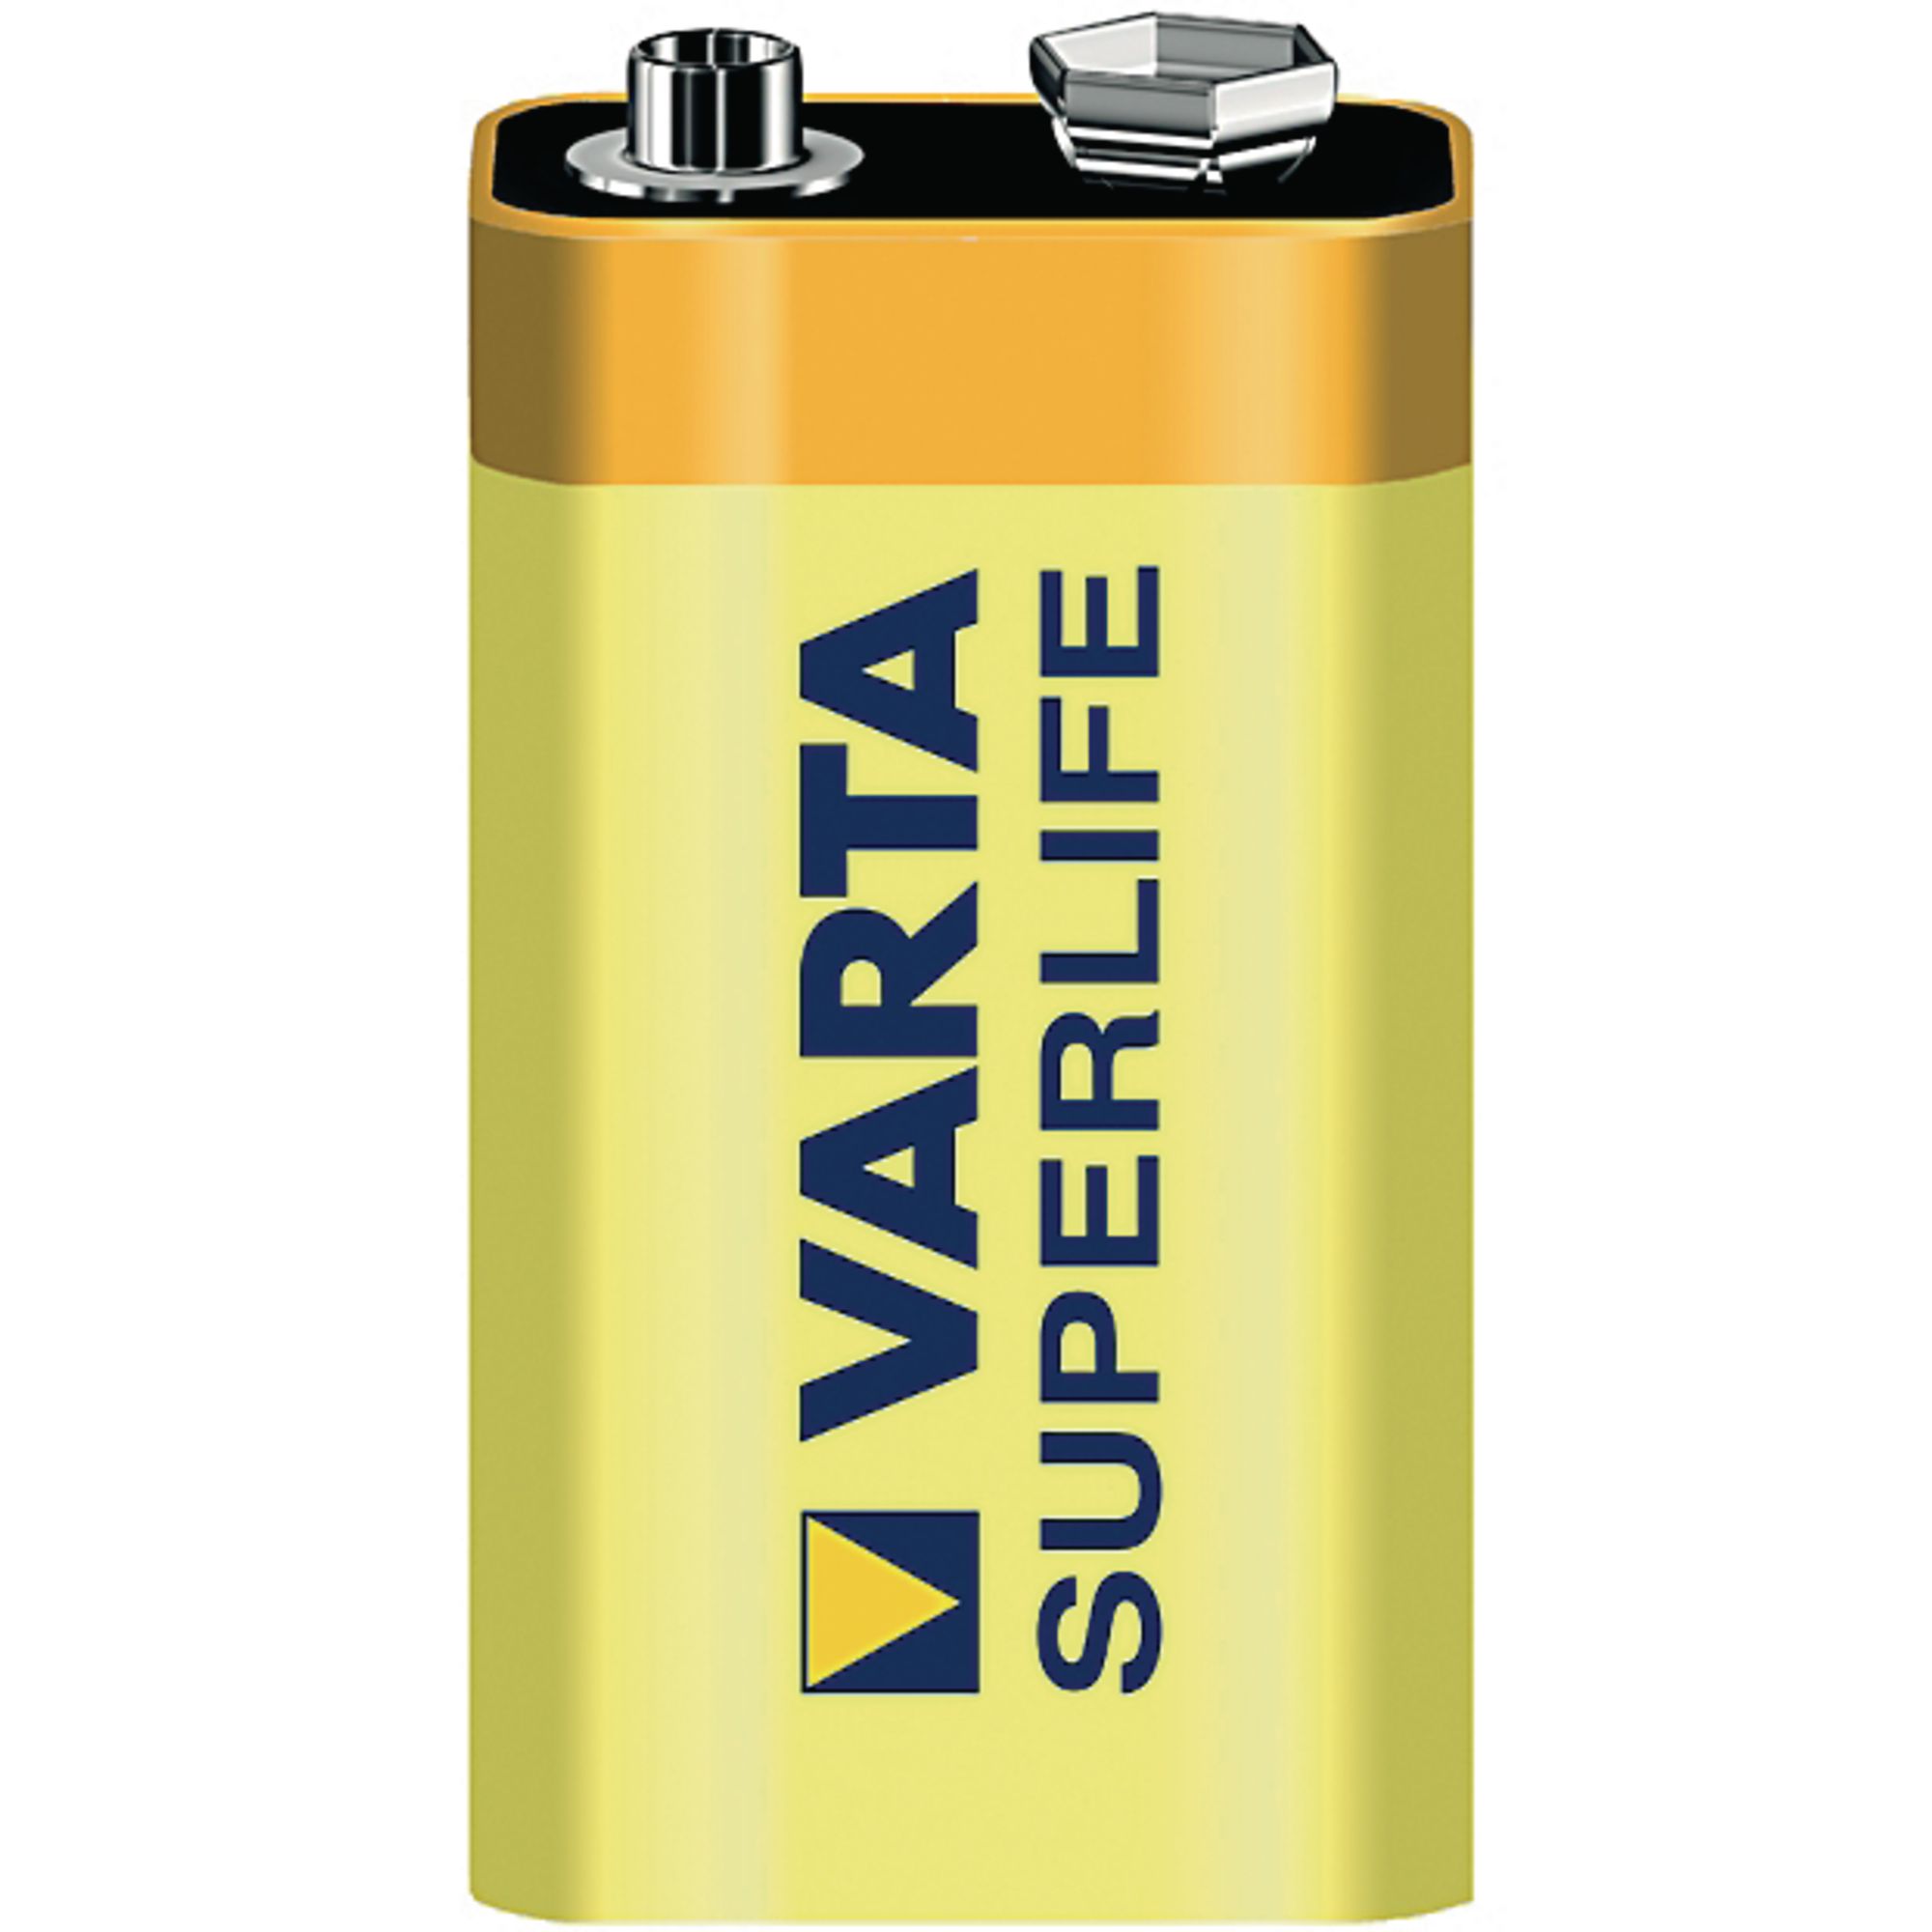 Элемент питания 9v. 9v Battery крона Varta. Элемент питания 6f22 Superlife (2022) BP Varta. Батарейка Varta 6f22/крона-os1. Батарейка 9v(крона) Varta Alkaline.